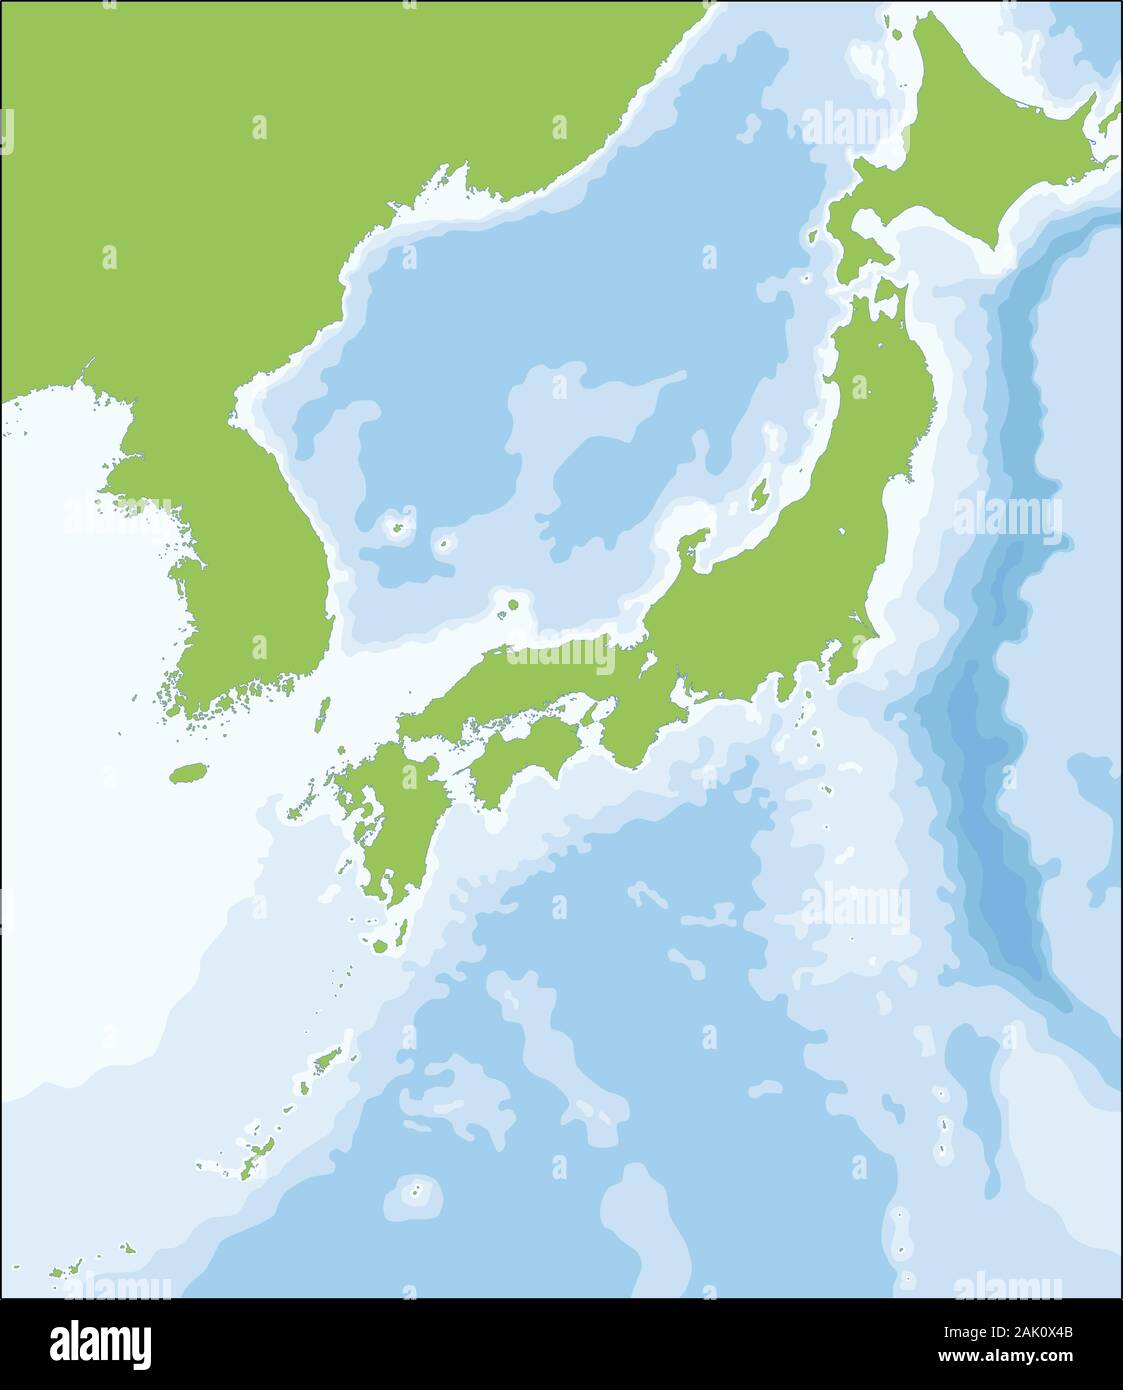 La carte d'illustration vectorielle du territoire japonais Illustration de Vecteur